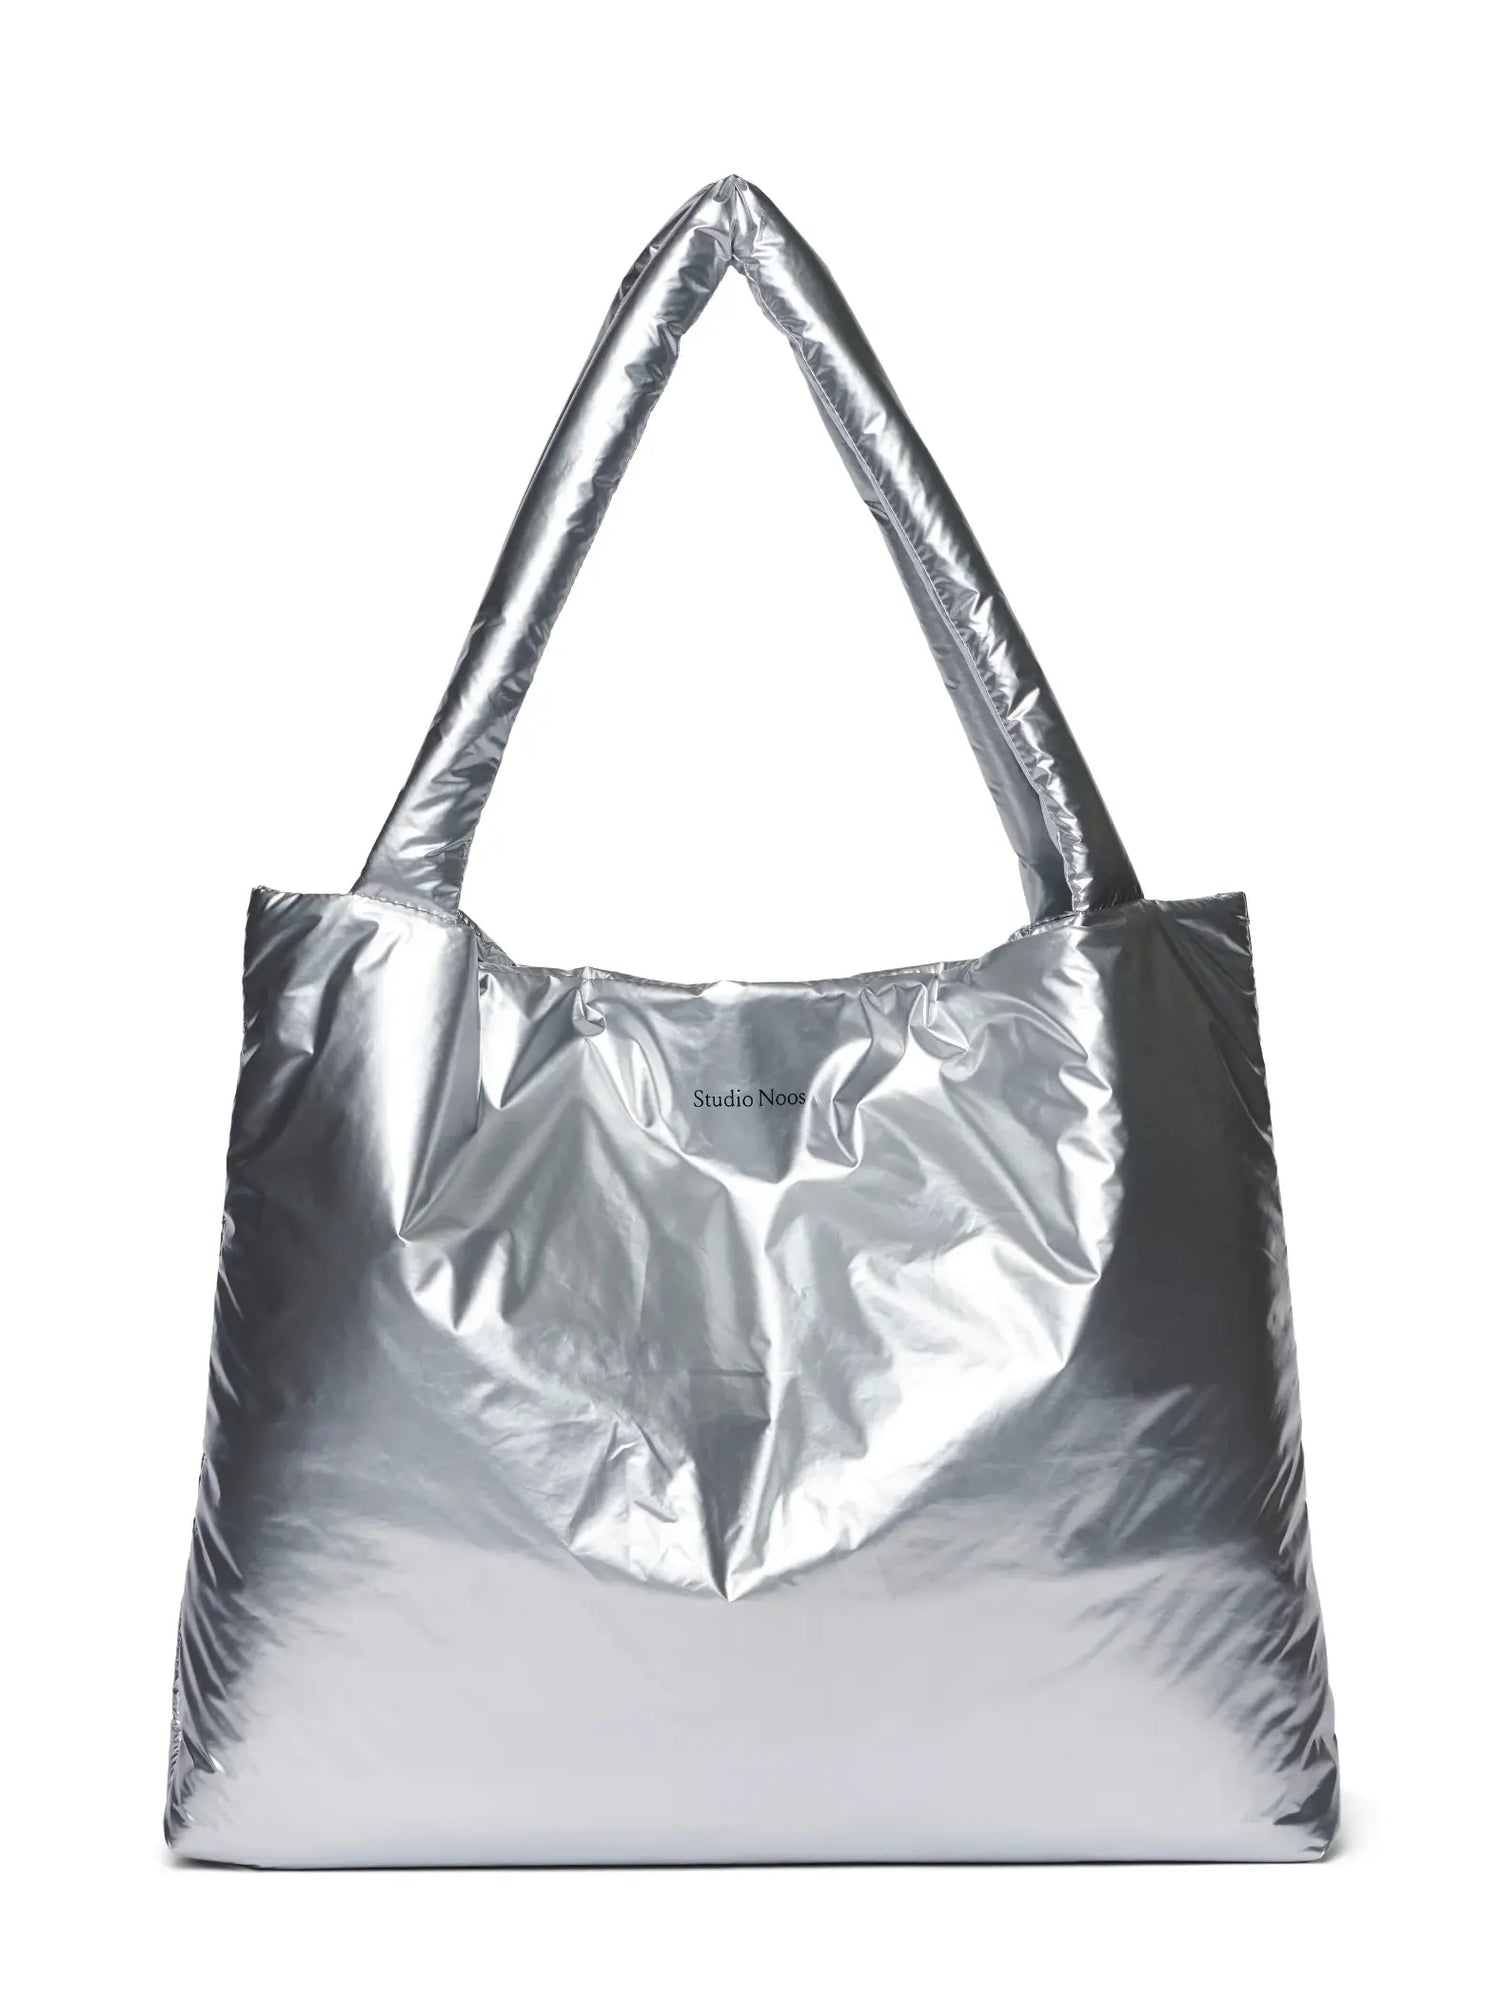 Puffy Mom Bag, silver